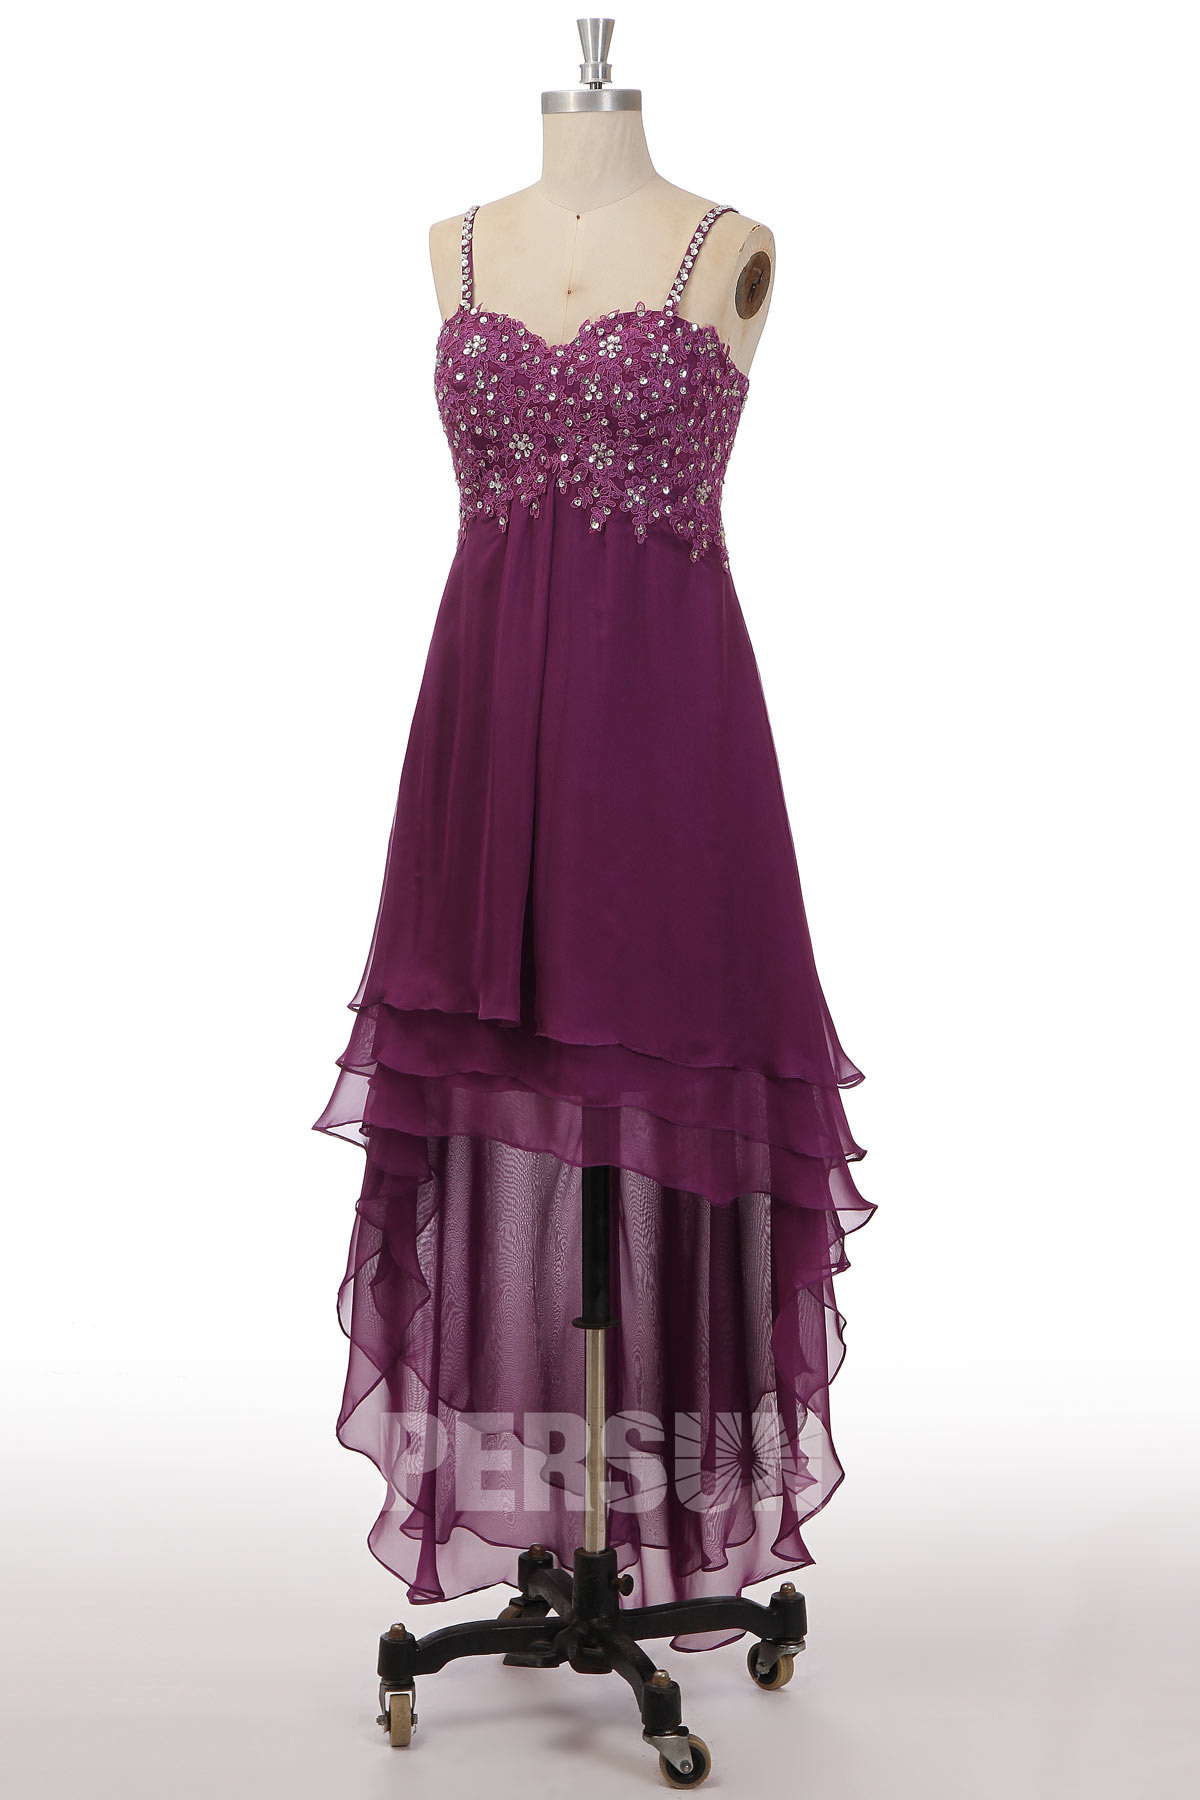 robe de soirée courte devant longue derrière violette à bretelle fine en dentelle appliqué florale